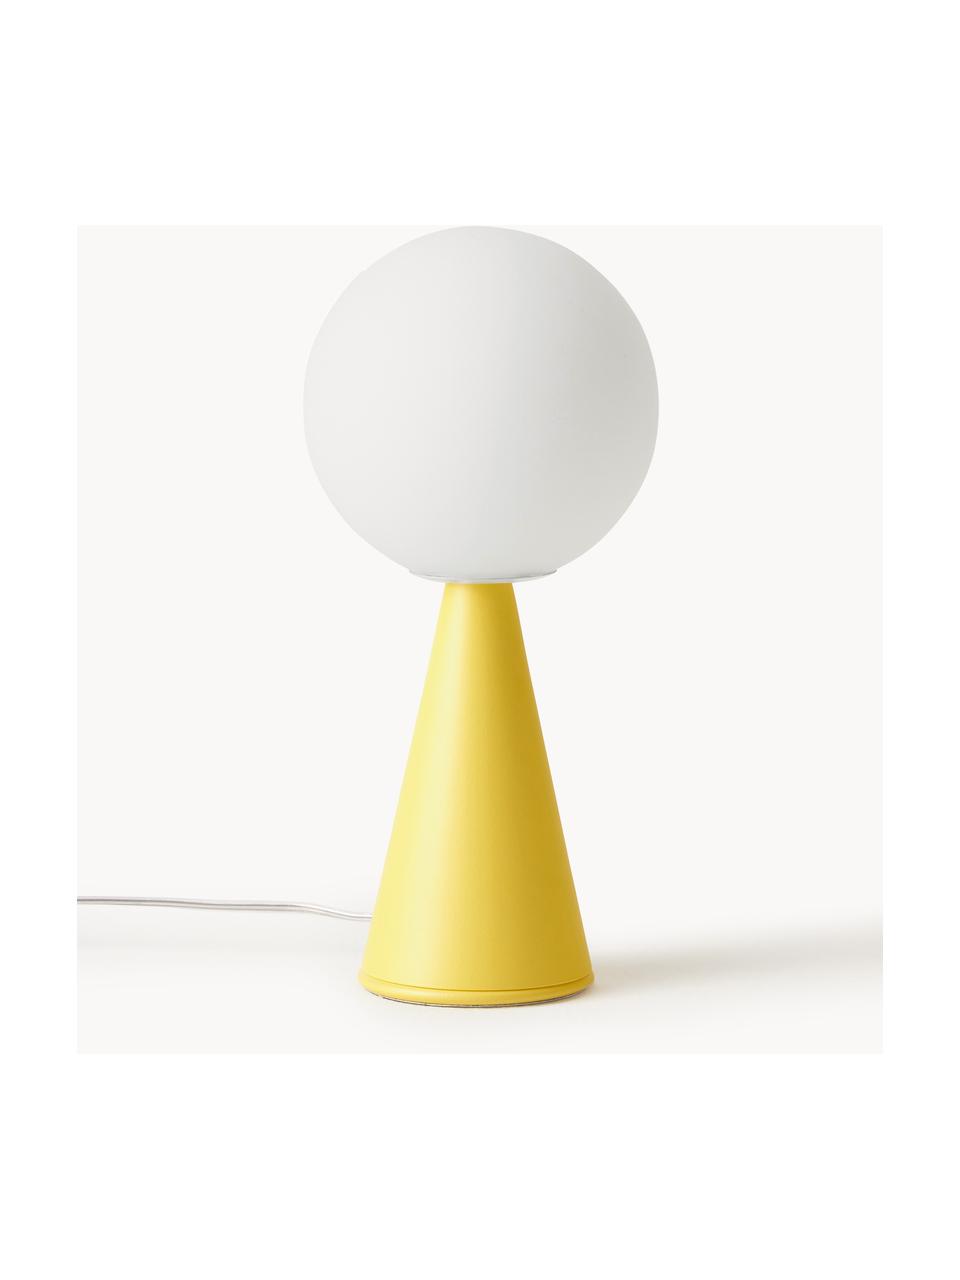 Lámpara de mesa artesanal pequeña Bilia, Pantalla: vidrio, Estructura: metal recubierto, Cable: plástico, Blanco, amarillo limón, Ø 12 x Al 26 cm